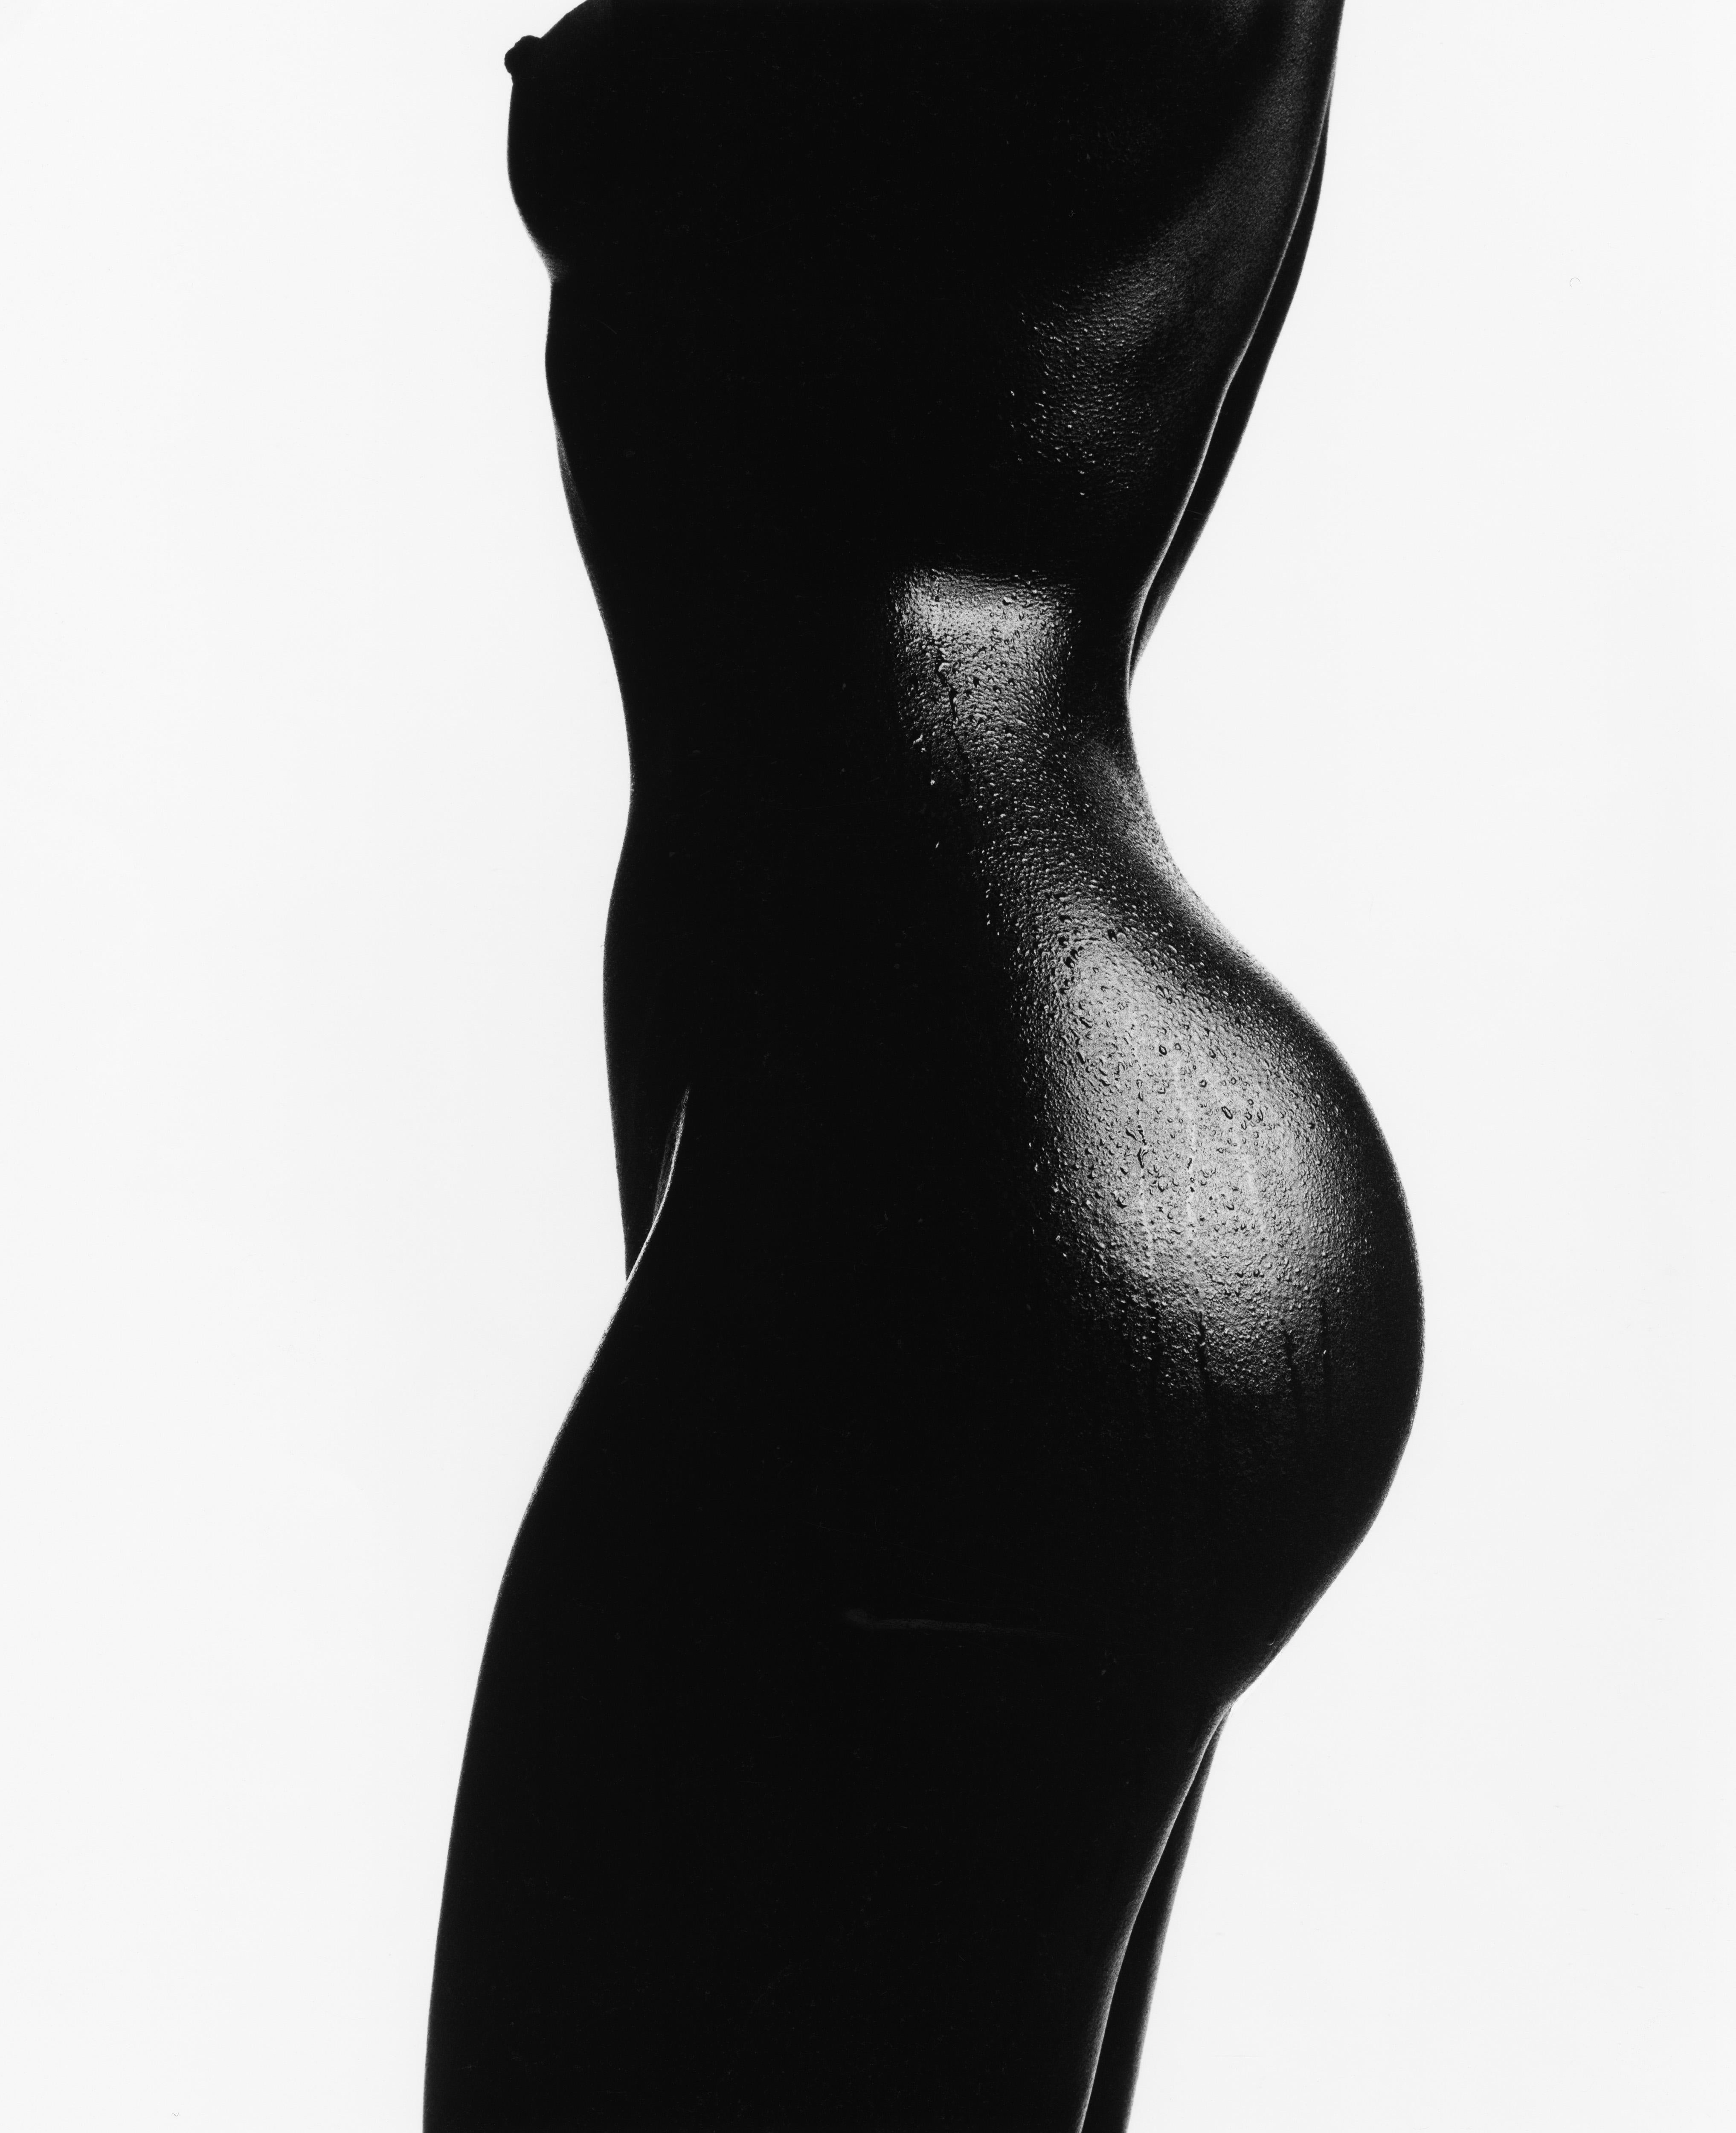 Thierry Le Gouès Black and White Photograph - Tuly, Paris 1994